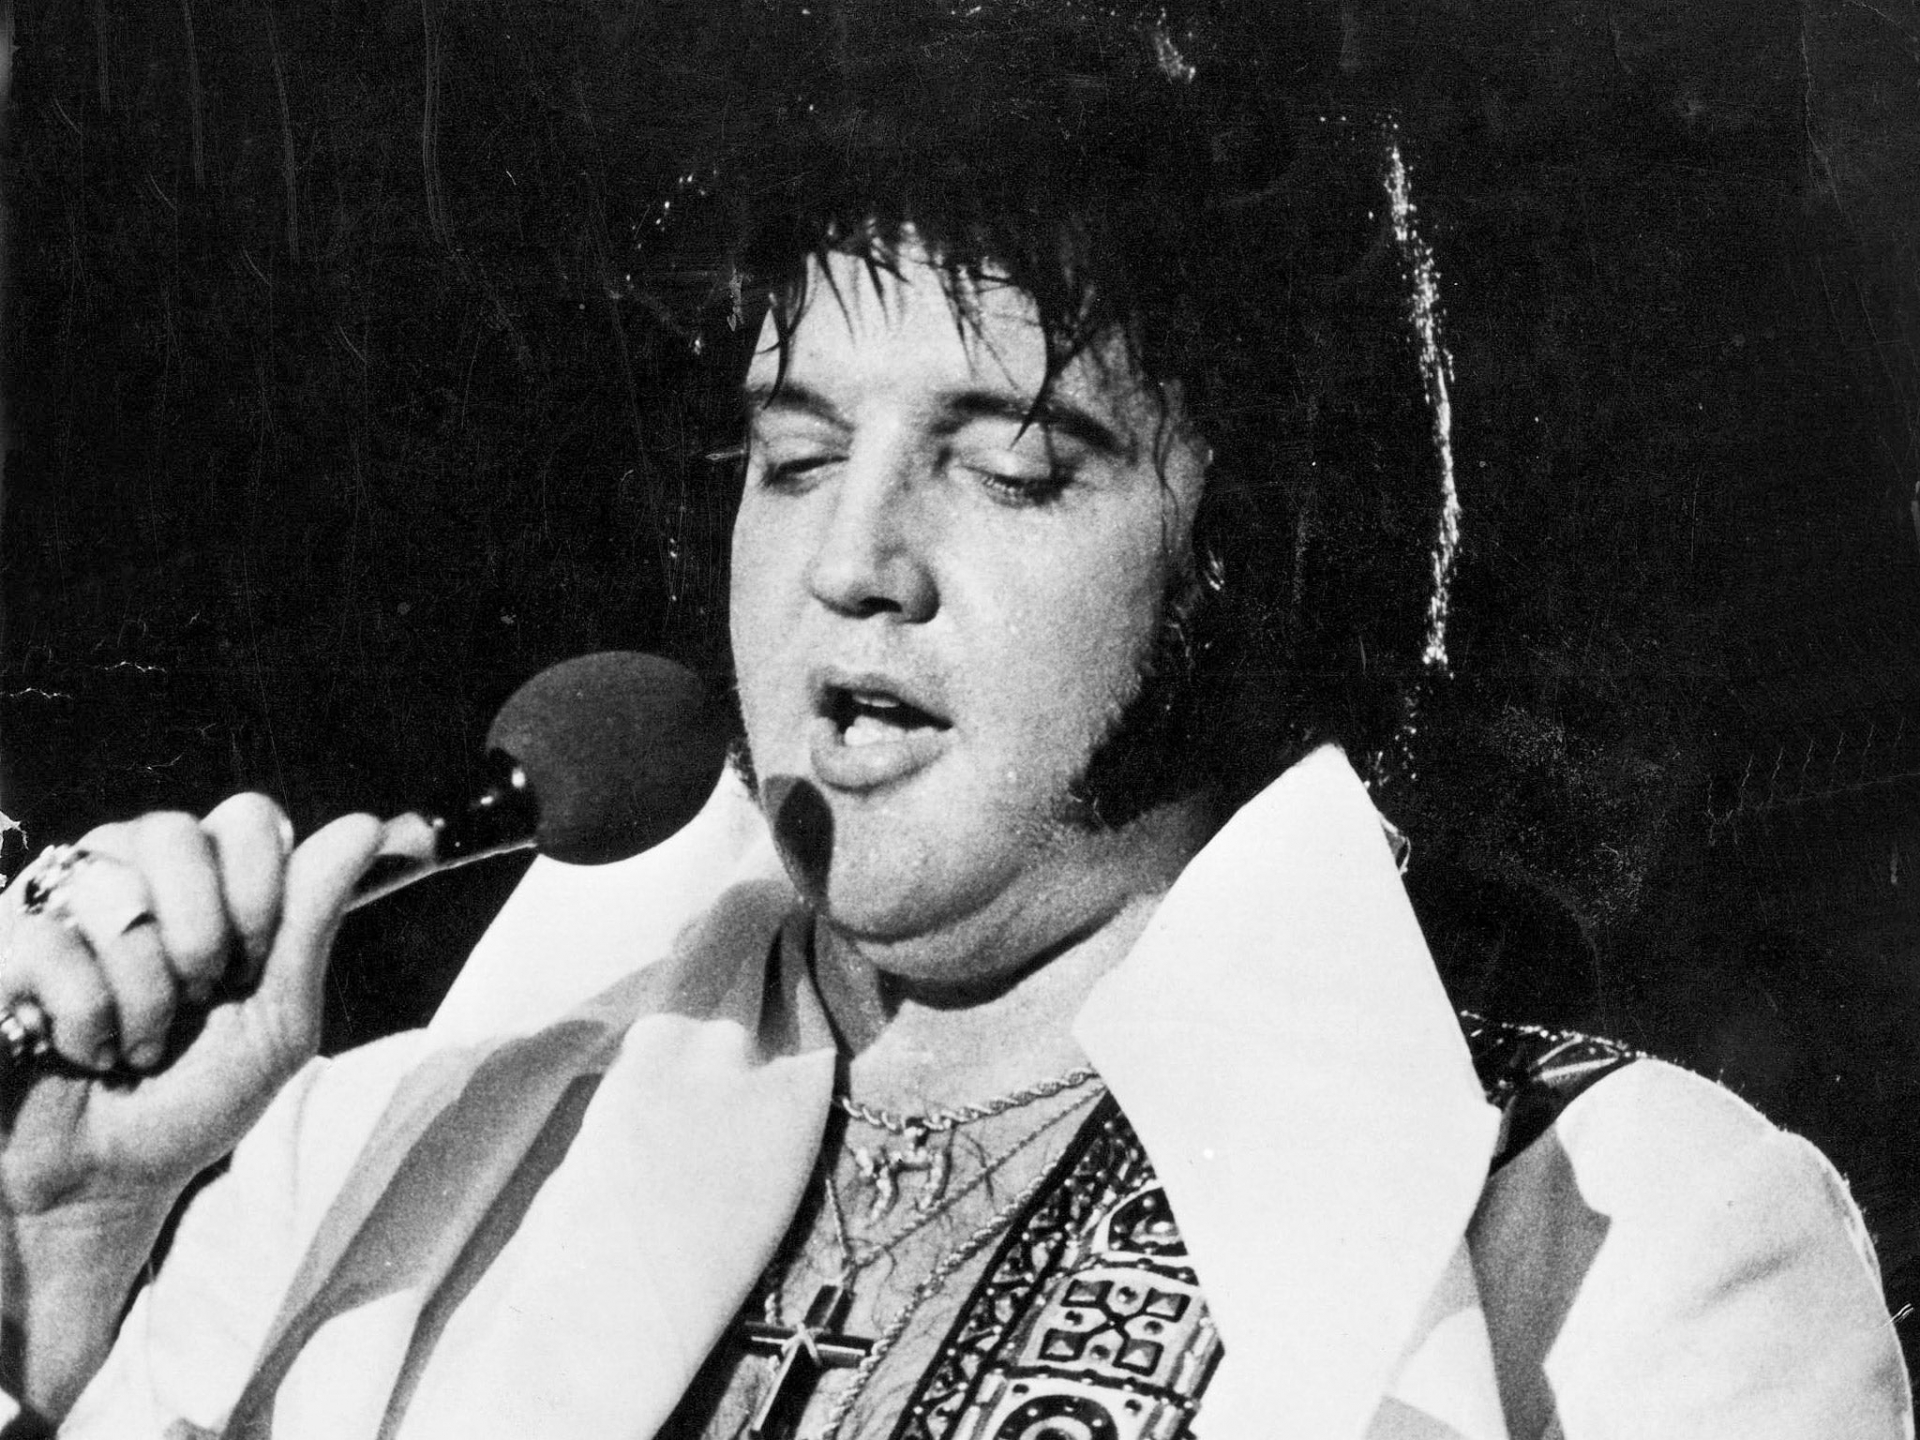 Who is Elvis Presley?